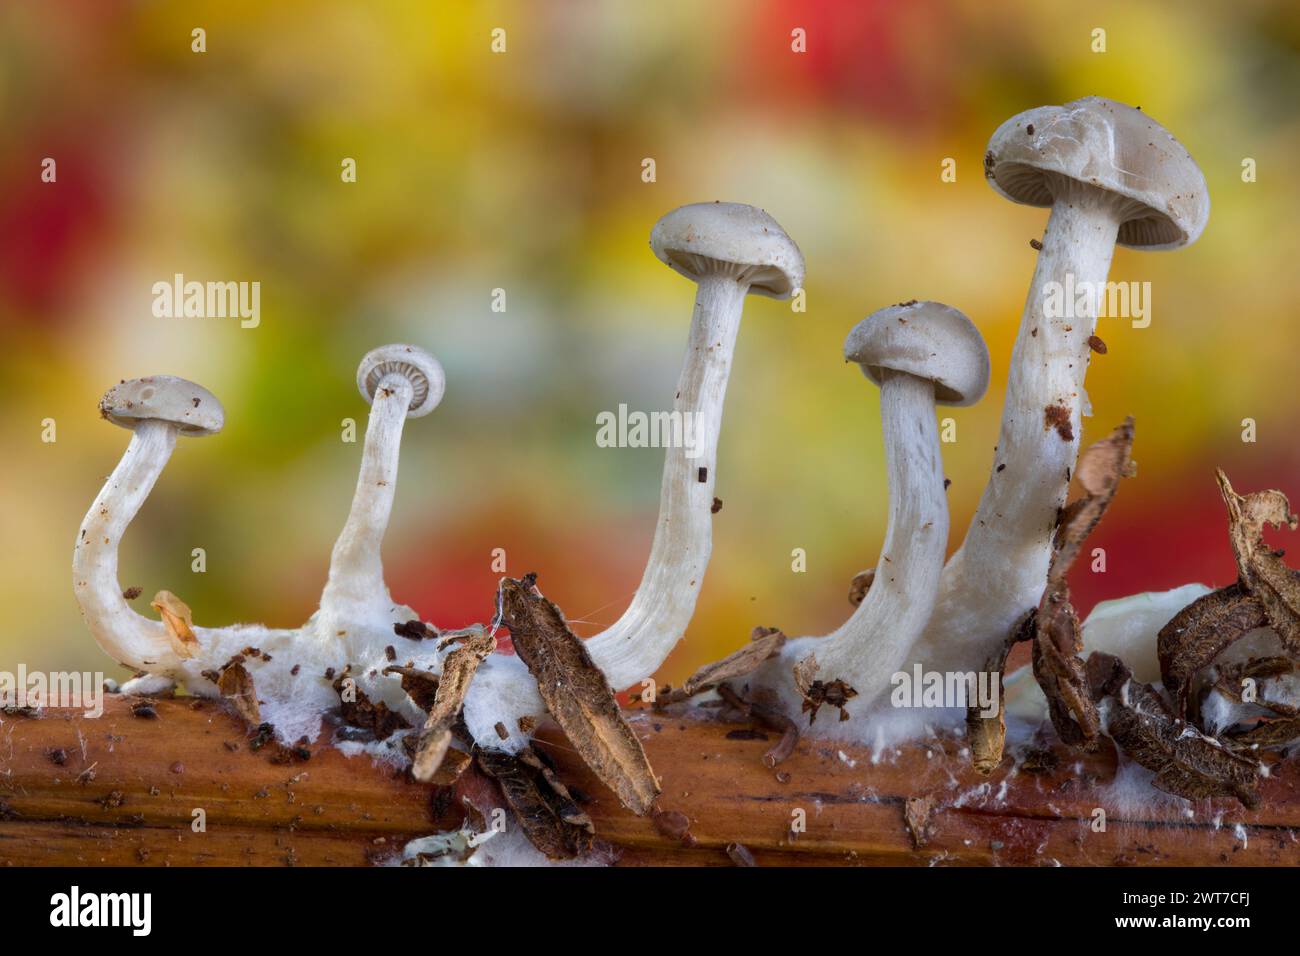 Petits corps de fructification de champignons de chapeau sur une tige de saumâtre en automne. Powys, pays de Galles. Novembre. Banque D'Images